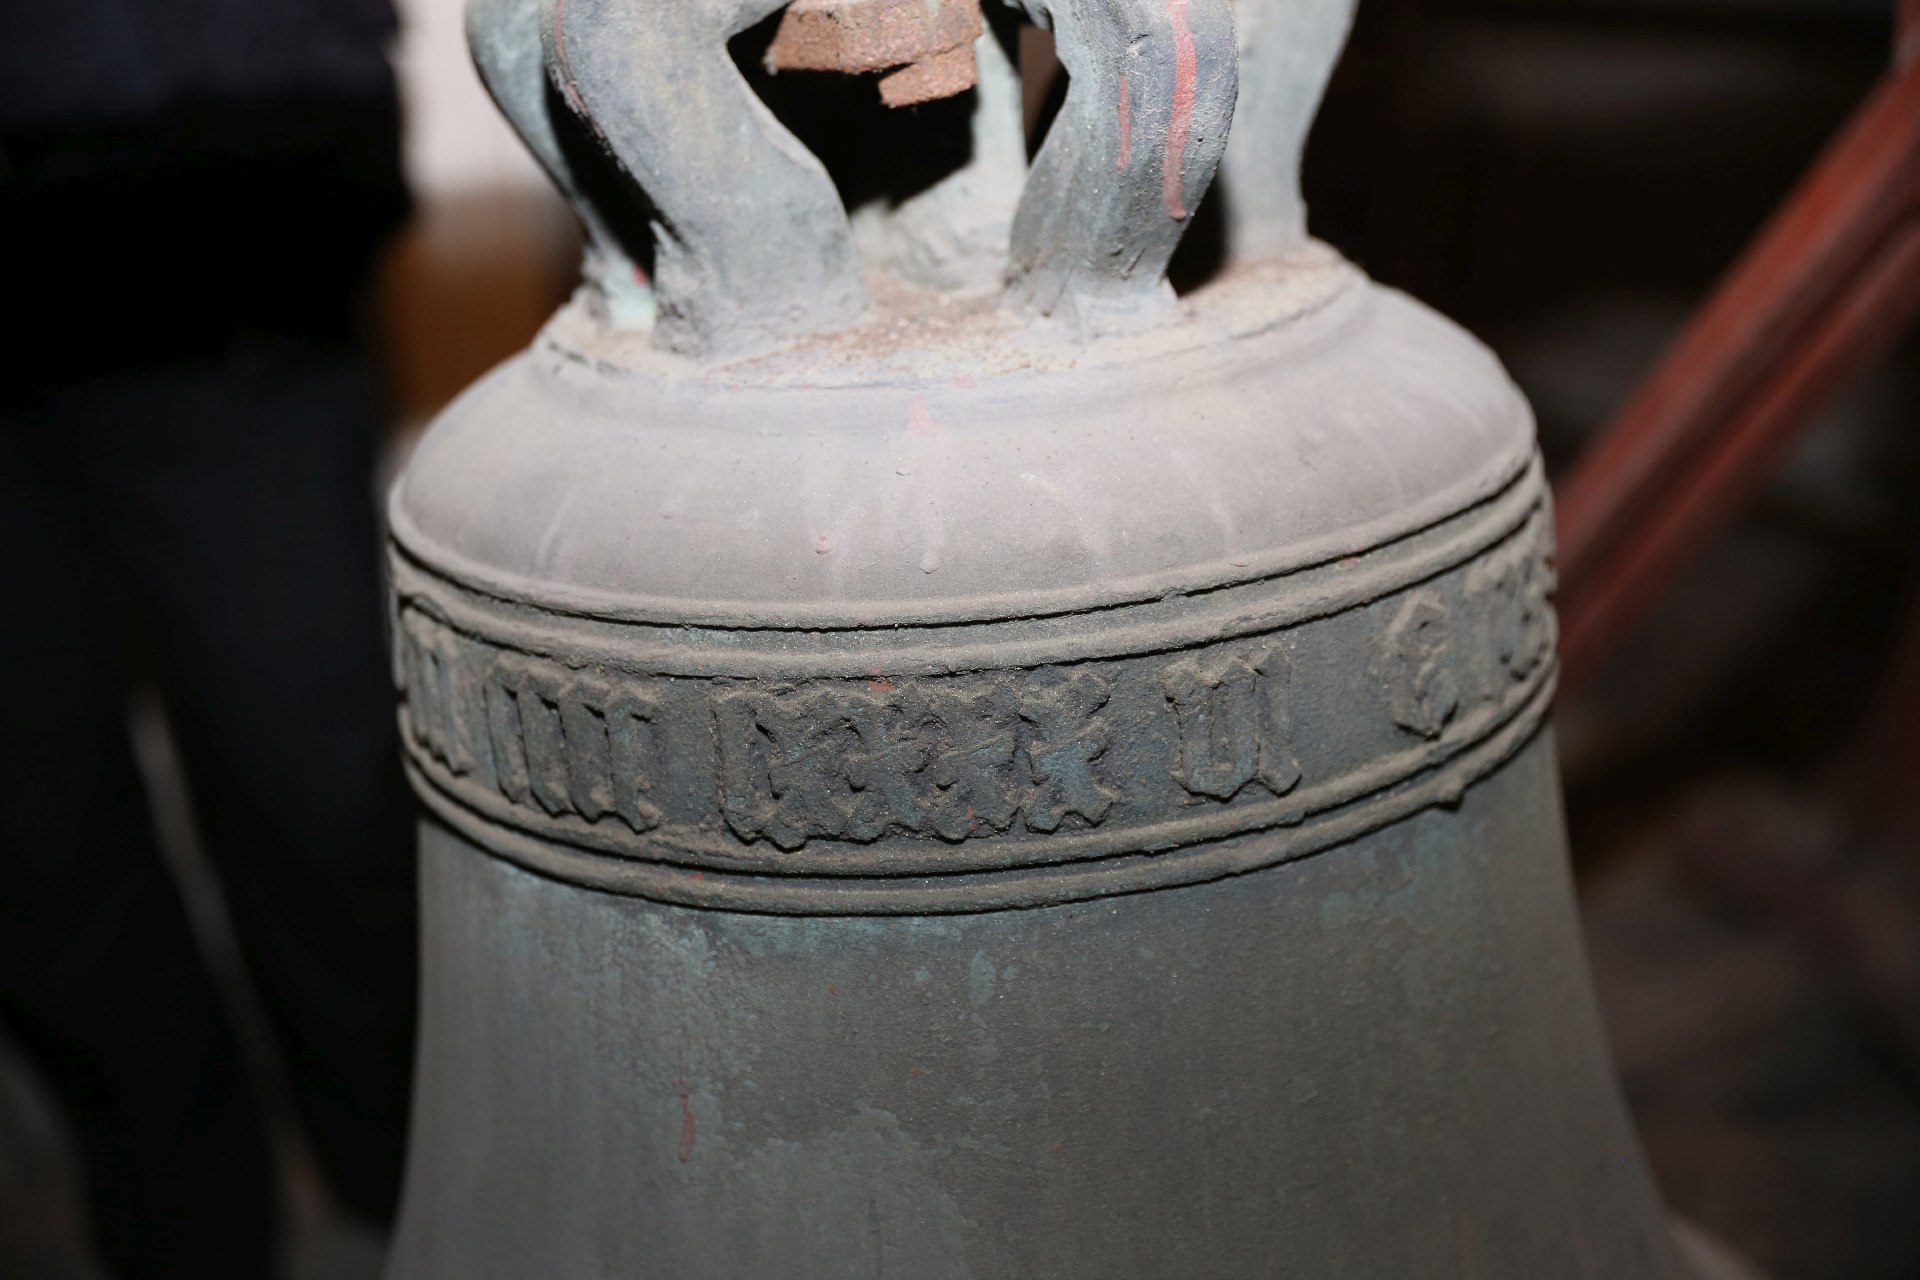 Rok odlania dzwonów zapisano w ich górnej części cyframi rzymskimi. Zdj. Wacław Troszka